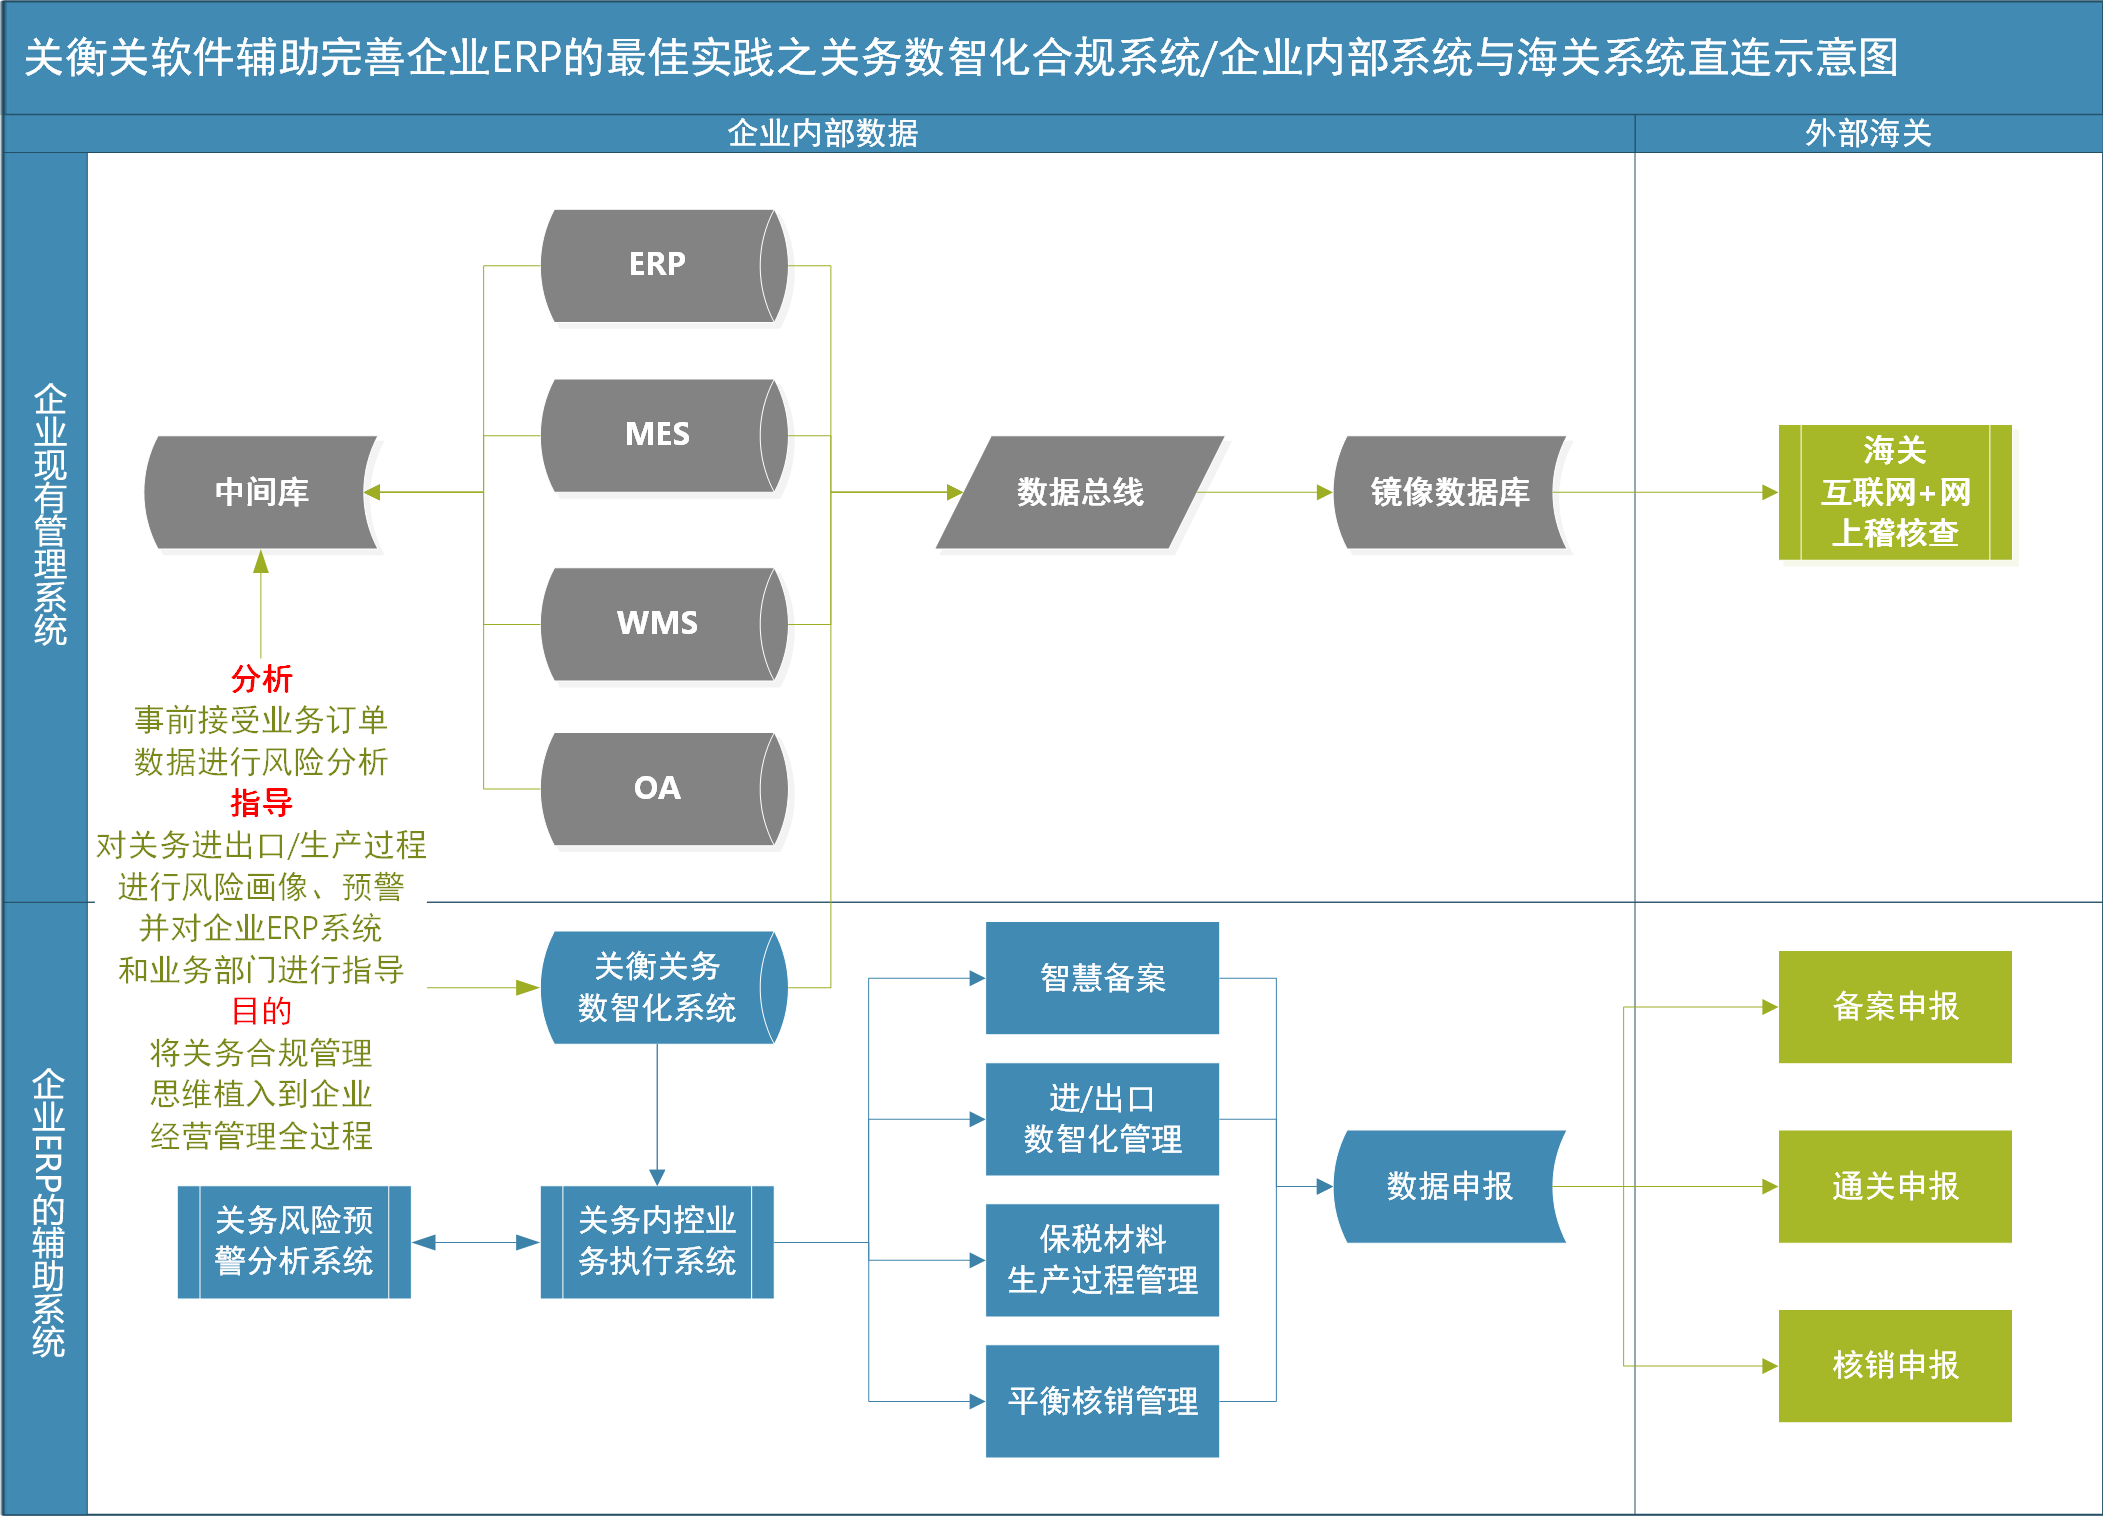 解读海关推出的加贸16条改革措施中第7条“实施“保税+ERP”的内容(图4)